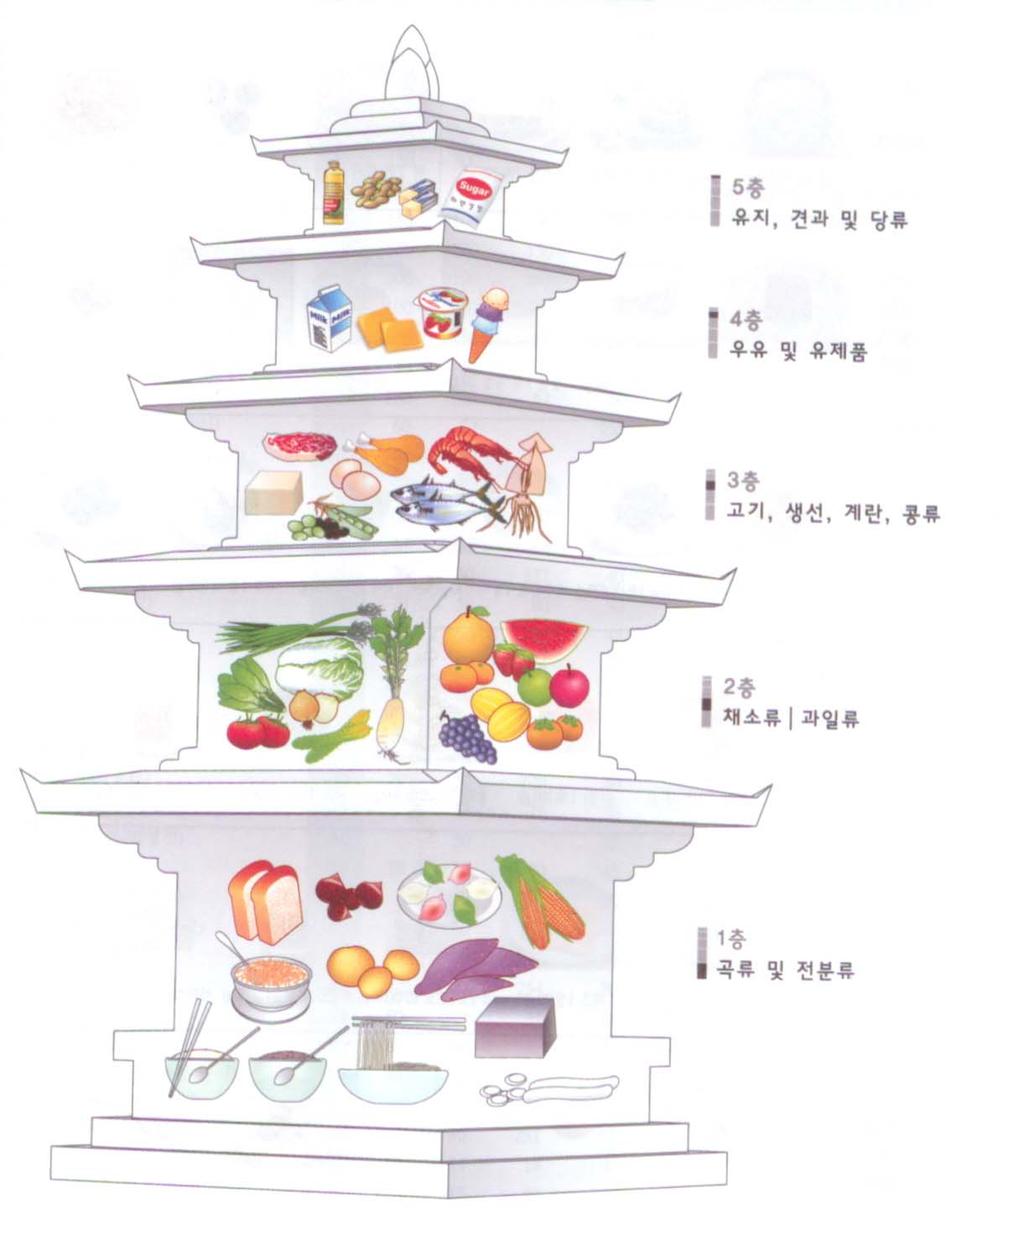 2 식품구성탑 -